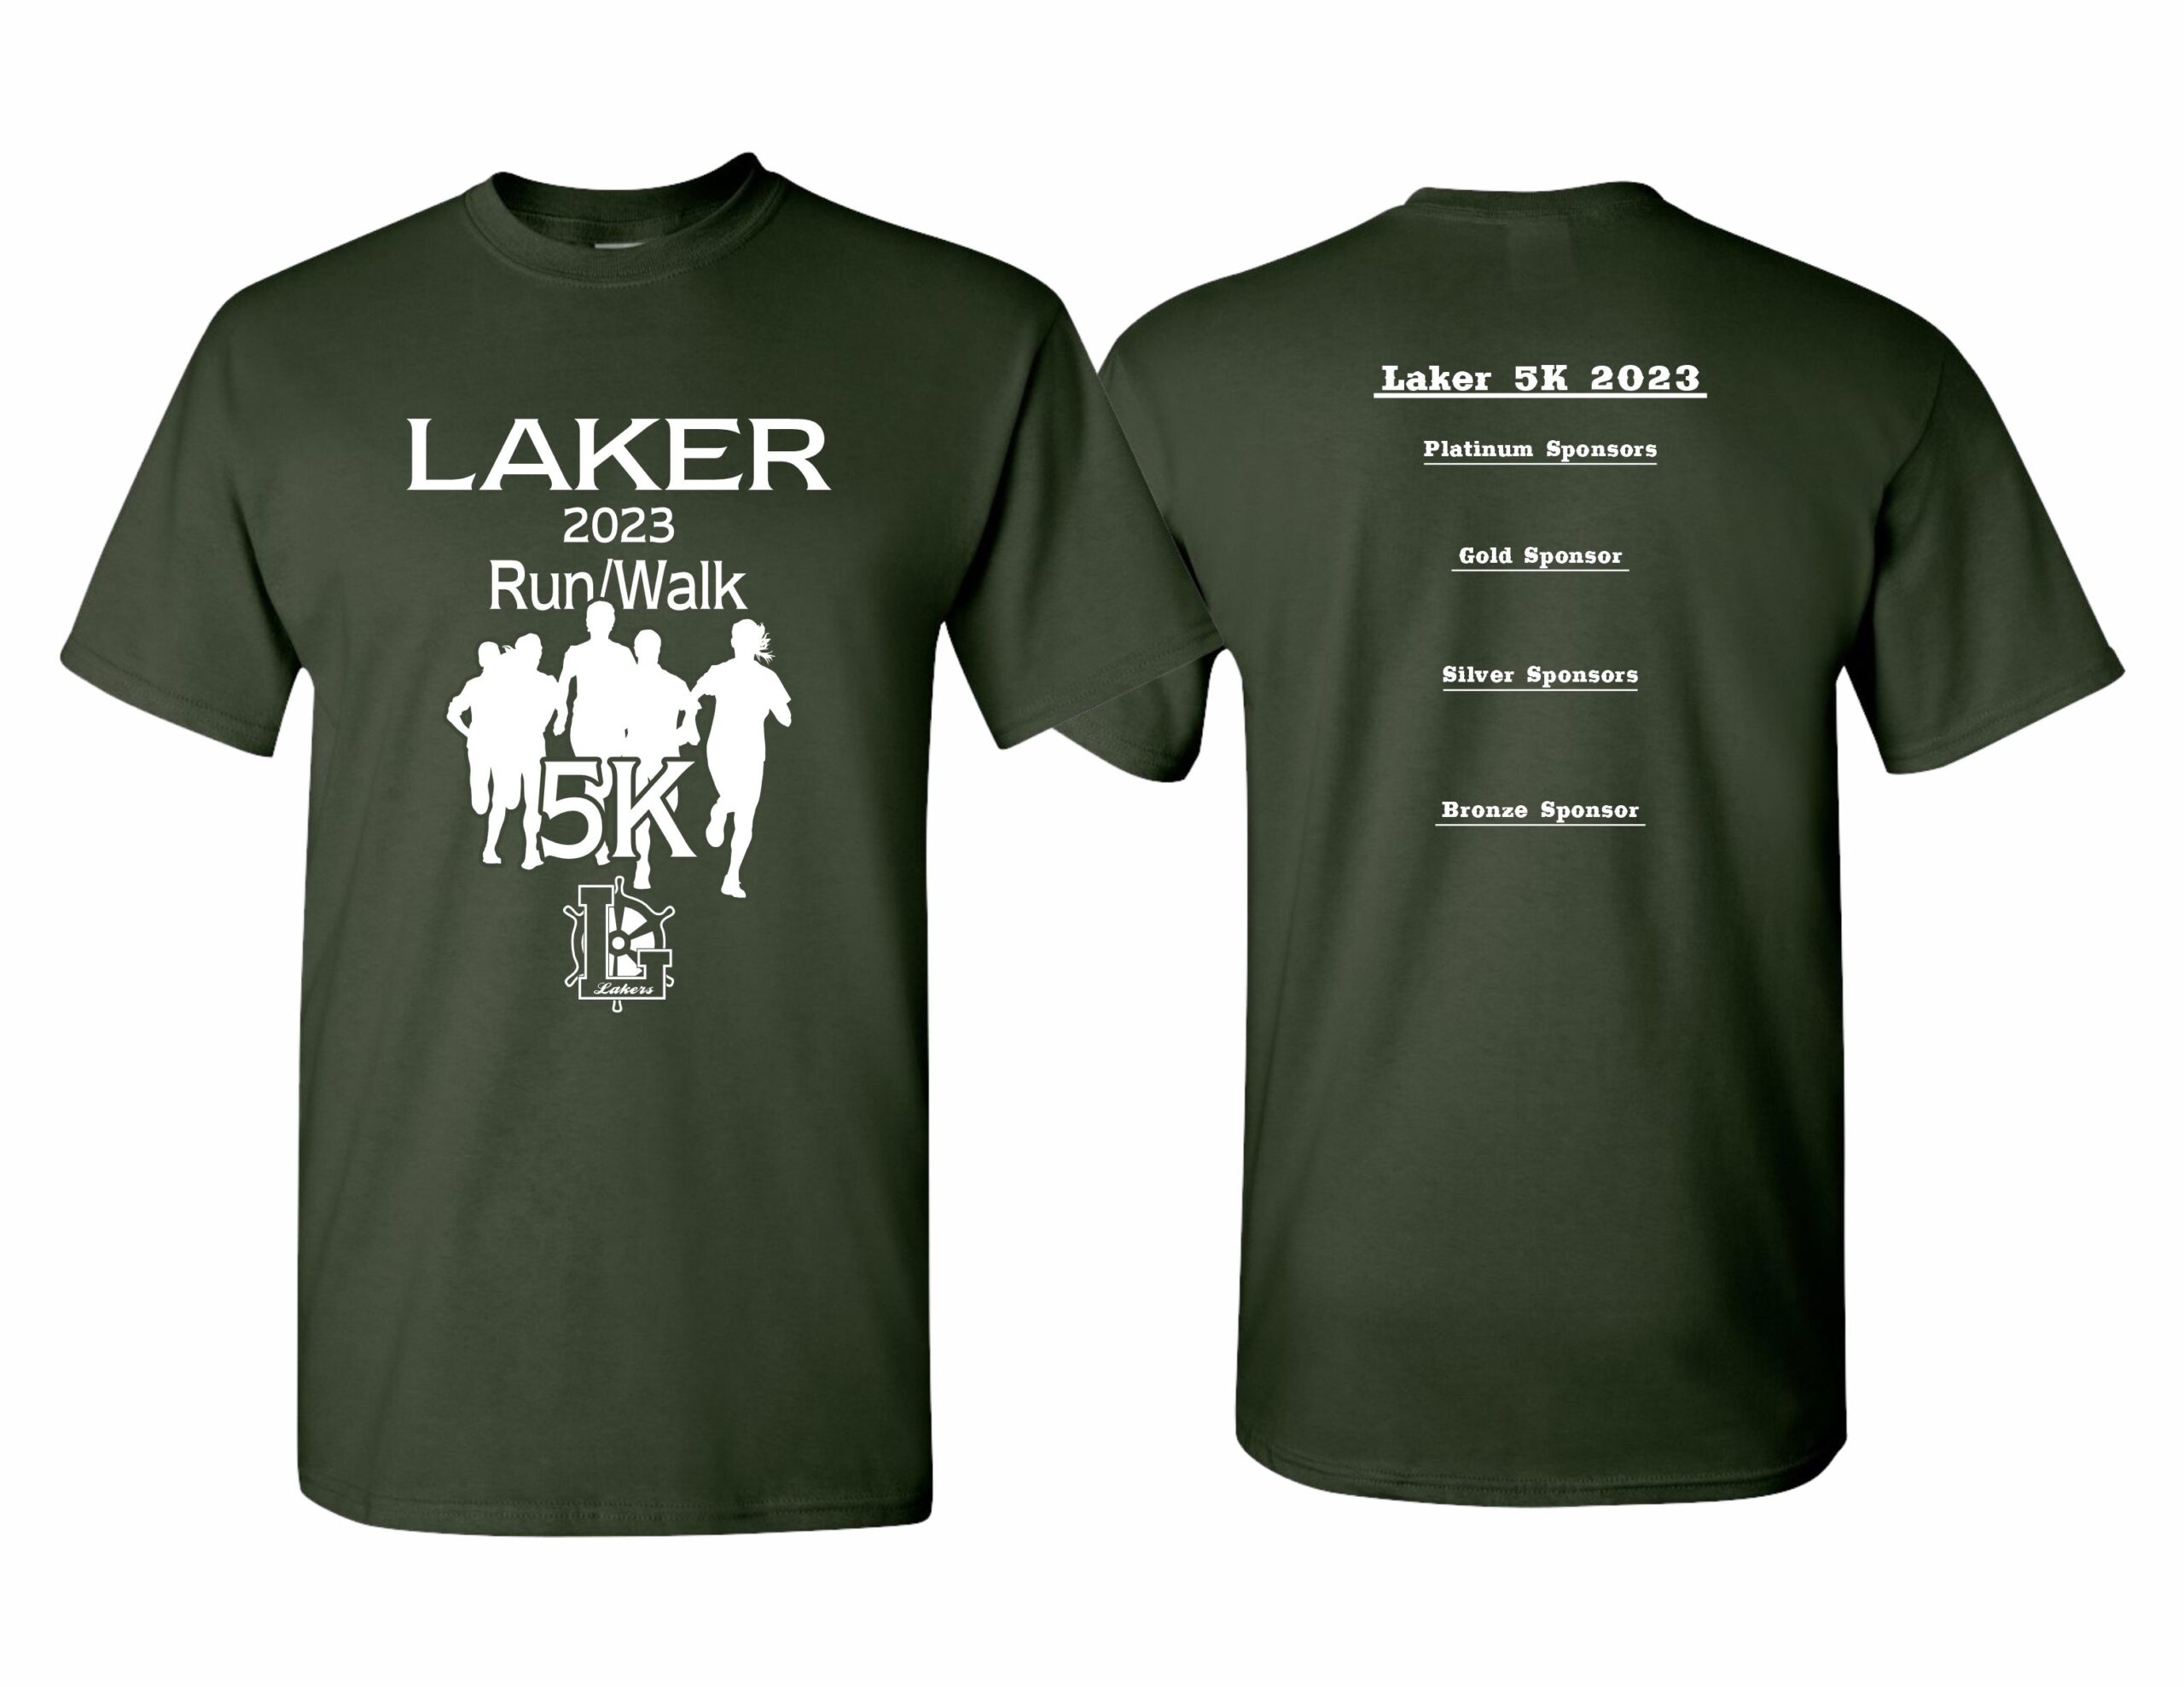 Laker 5K tshirts 2023